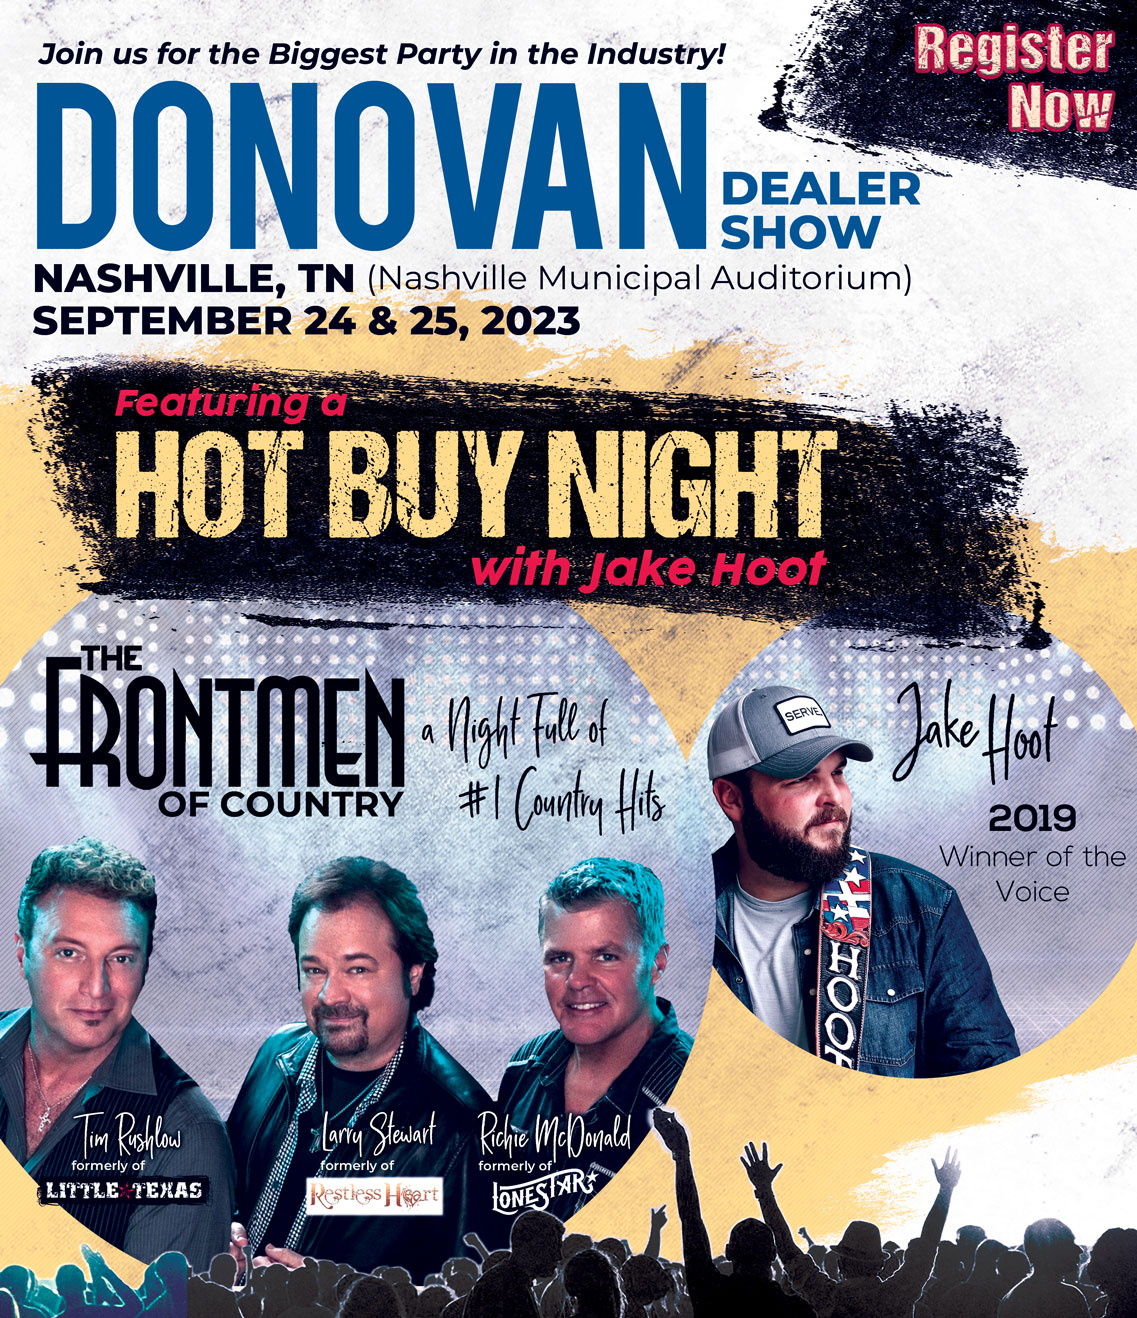 Donovan Dealer Show Image